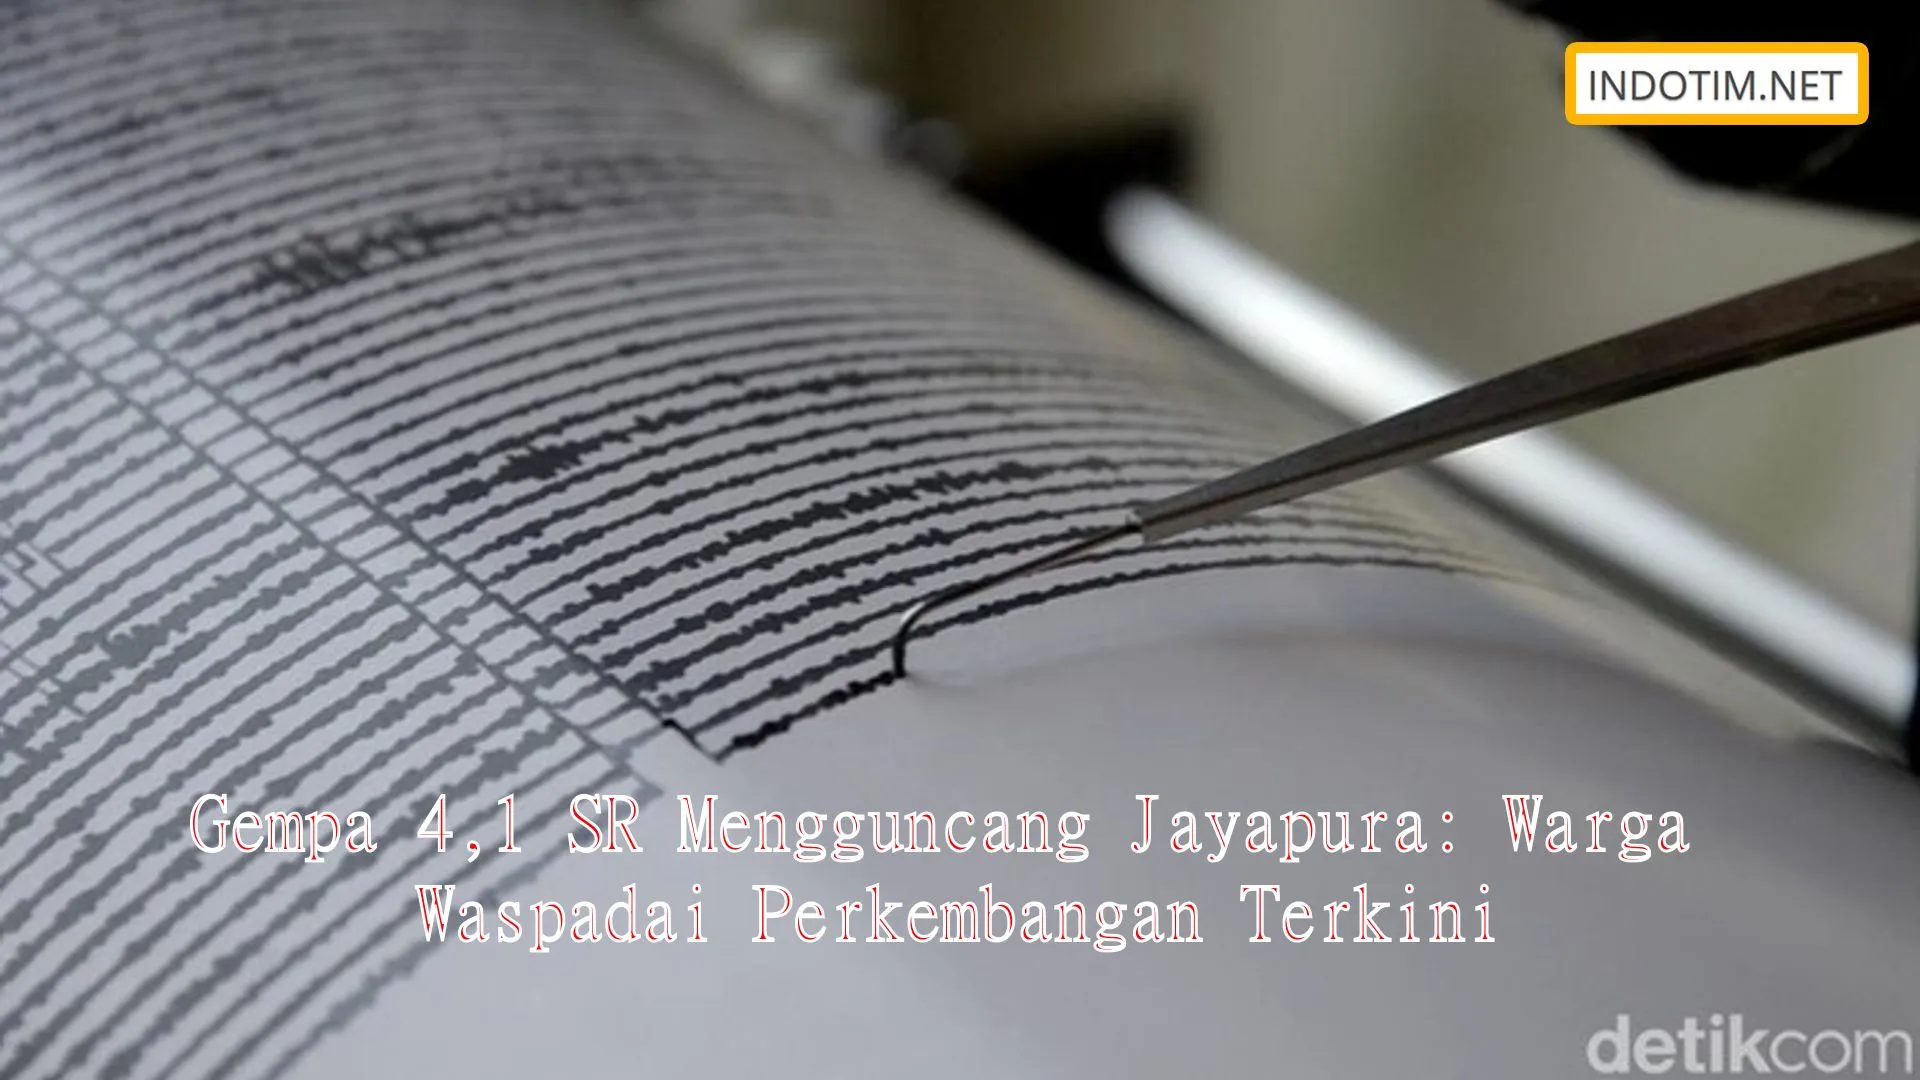 Gempa 4,1 SR Mengguncang Jayapura: Warga Waspadai Perkembangan Terkini